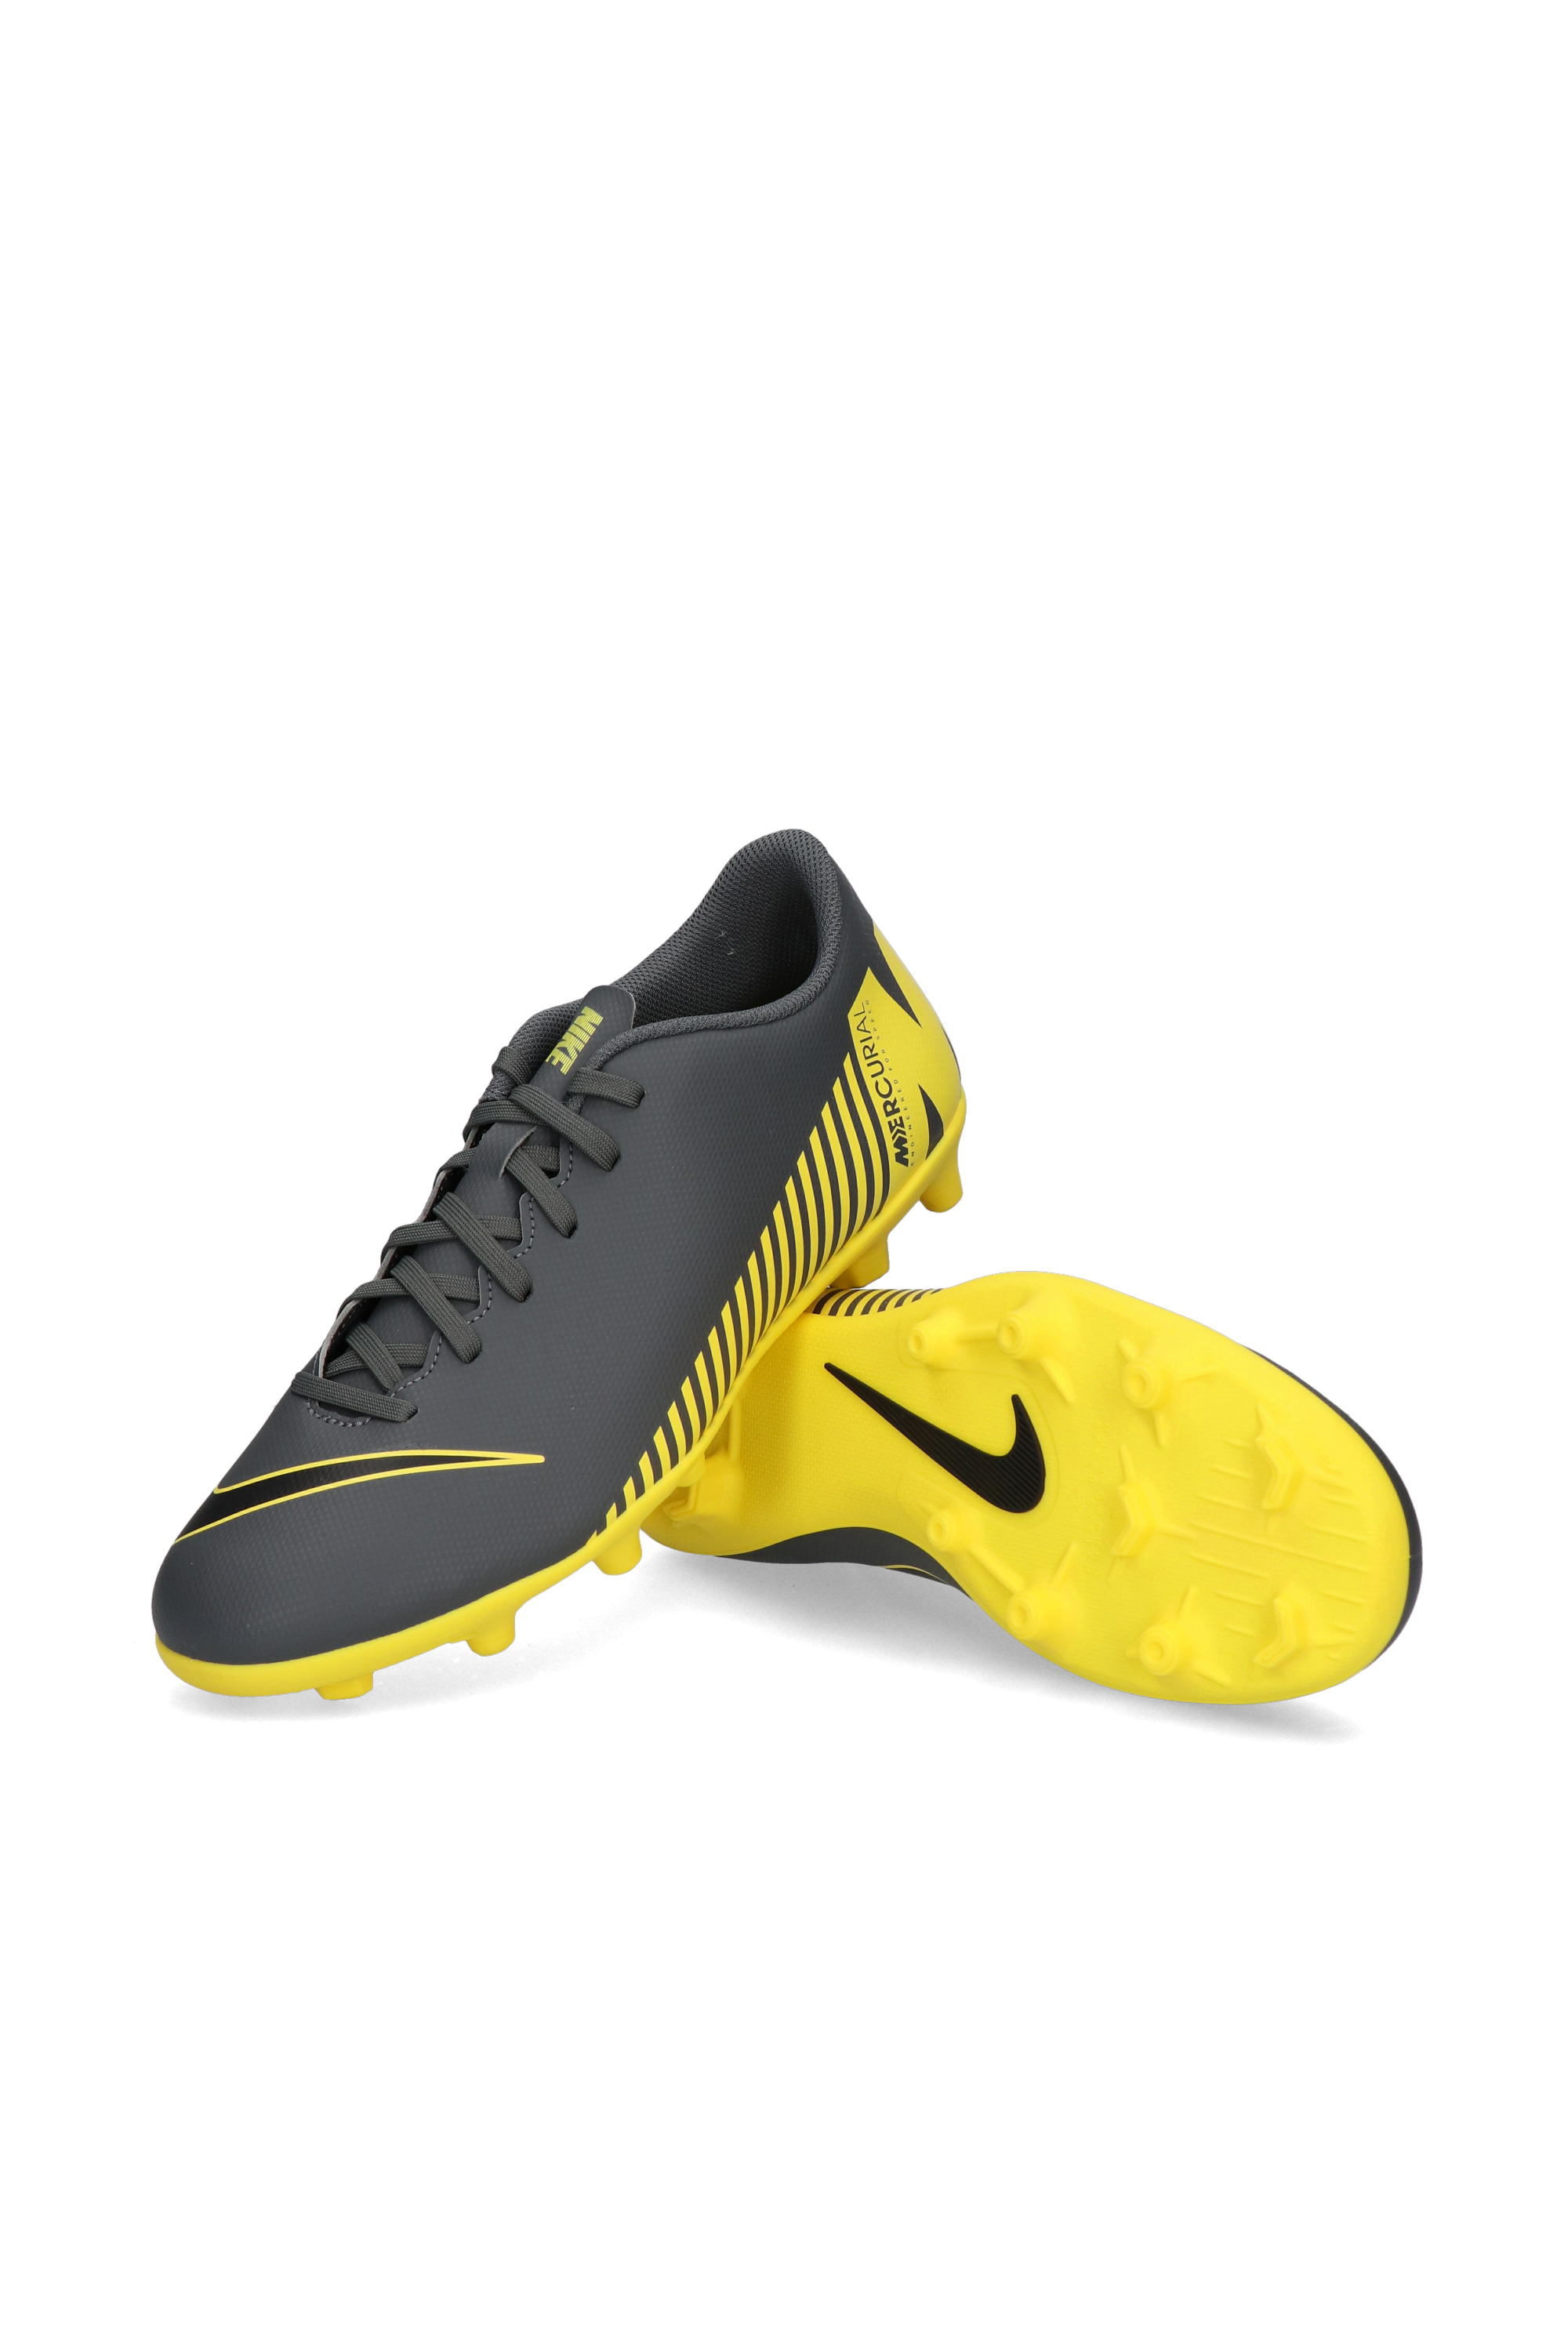 Nike Vapor 12 Club FG/MG | R-GOL.com - Football boots \u0026 equipment